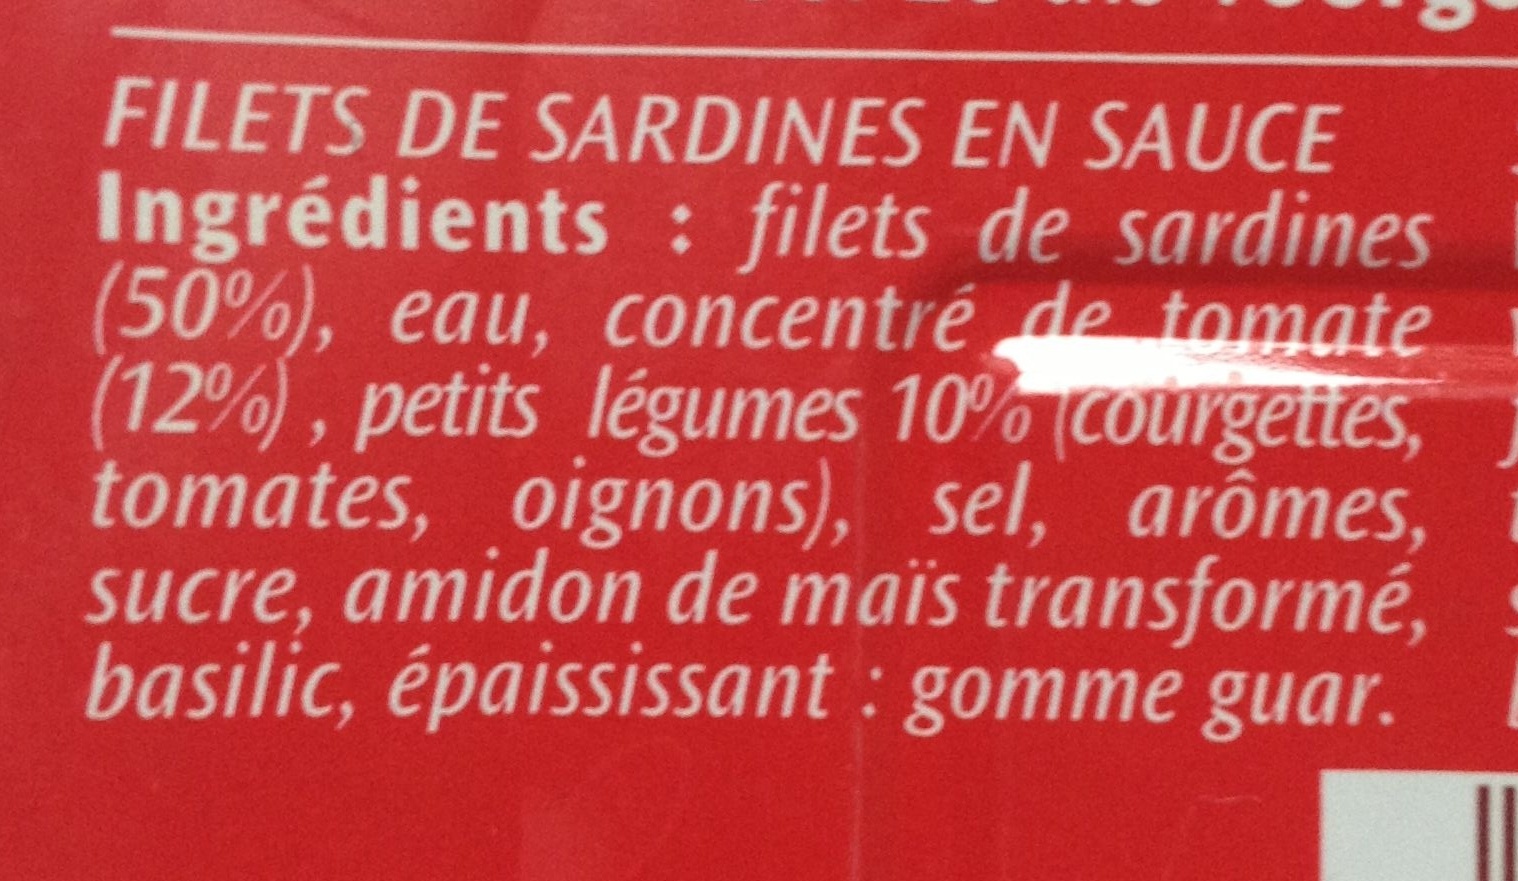 Filets de Sardines à la Tomate et ses petits légumes - Ingredients - fr